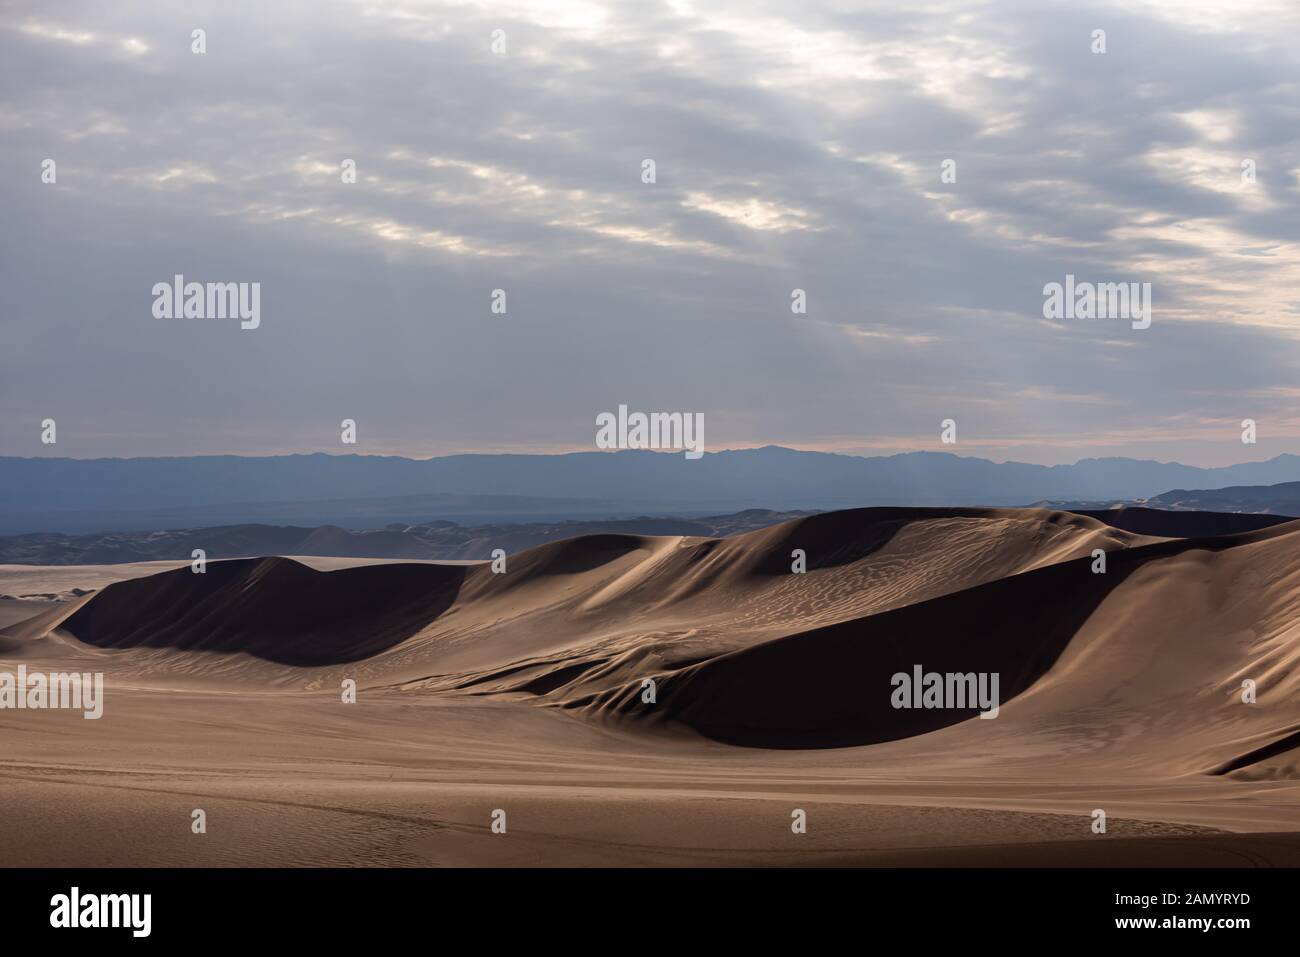 the shape of sand dunes in lut desert Stock Photo